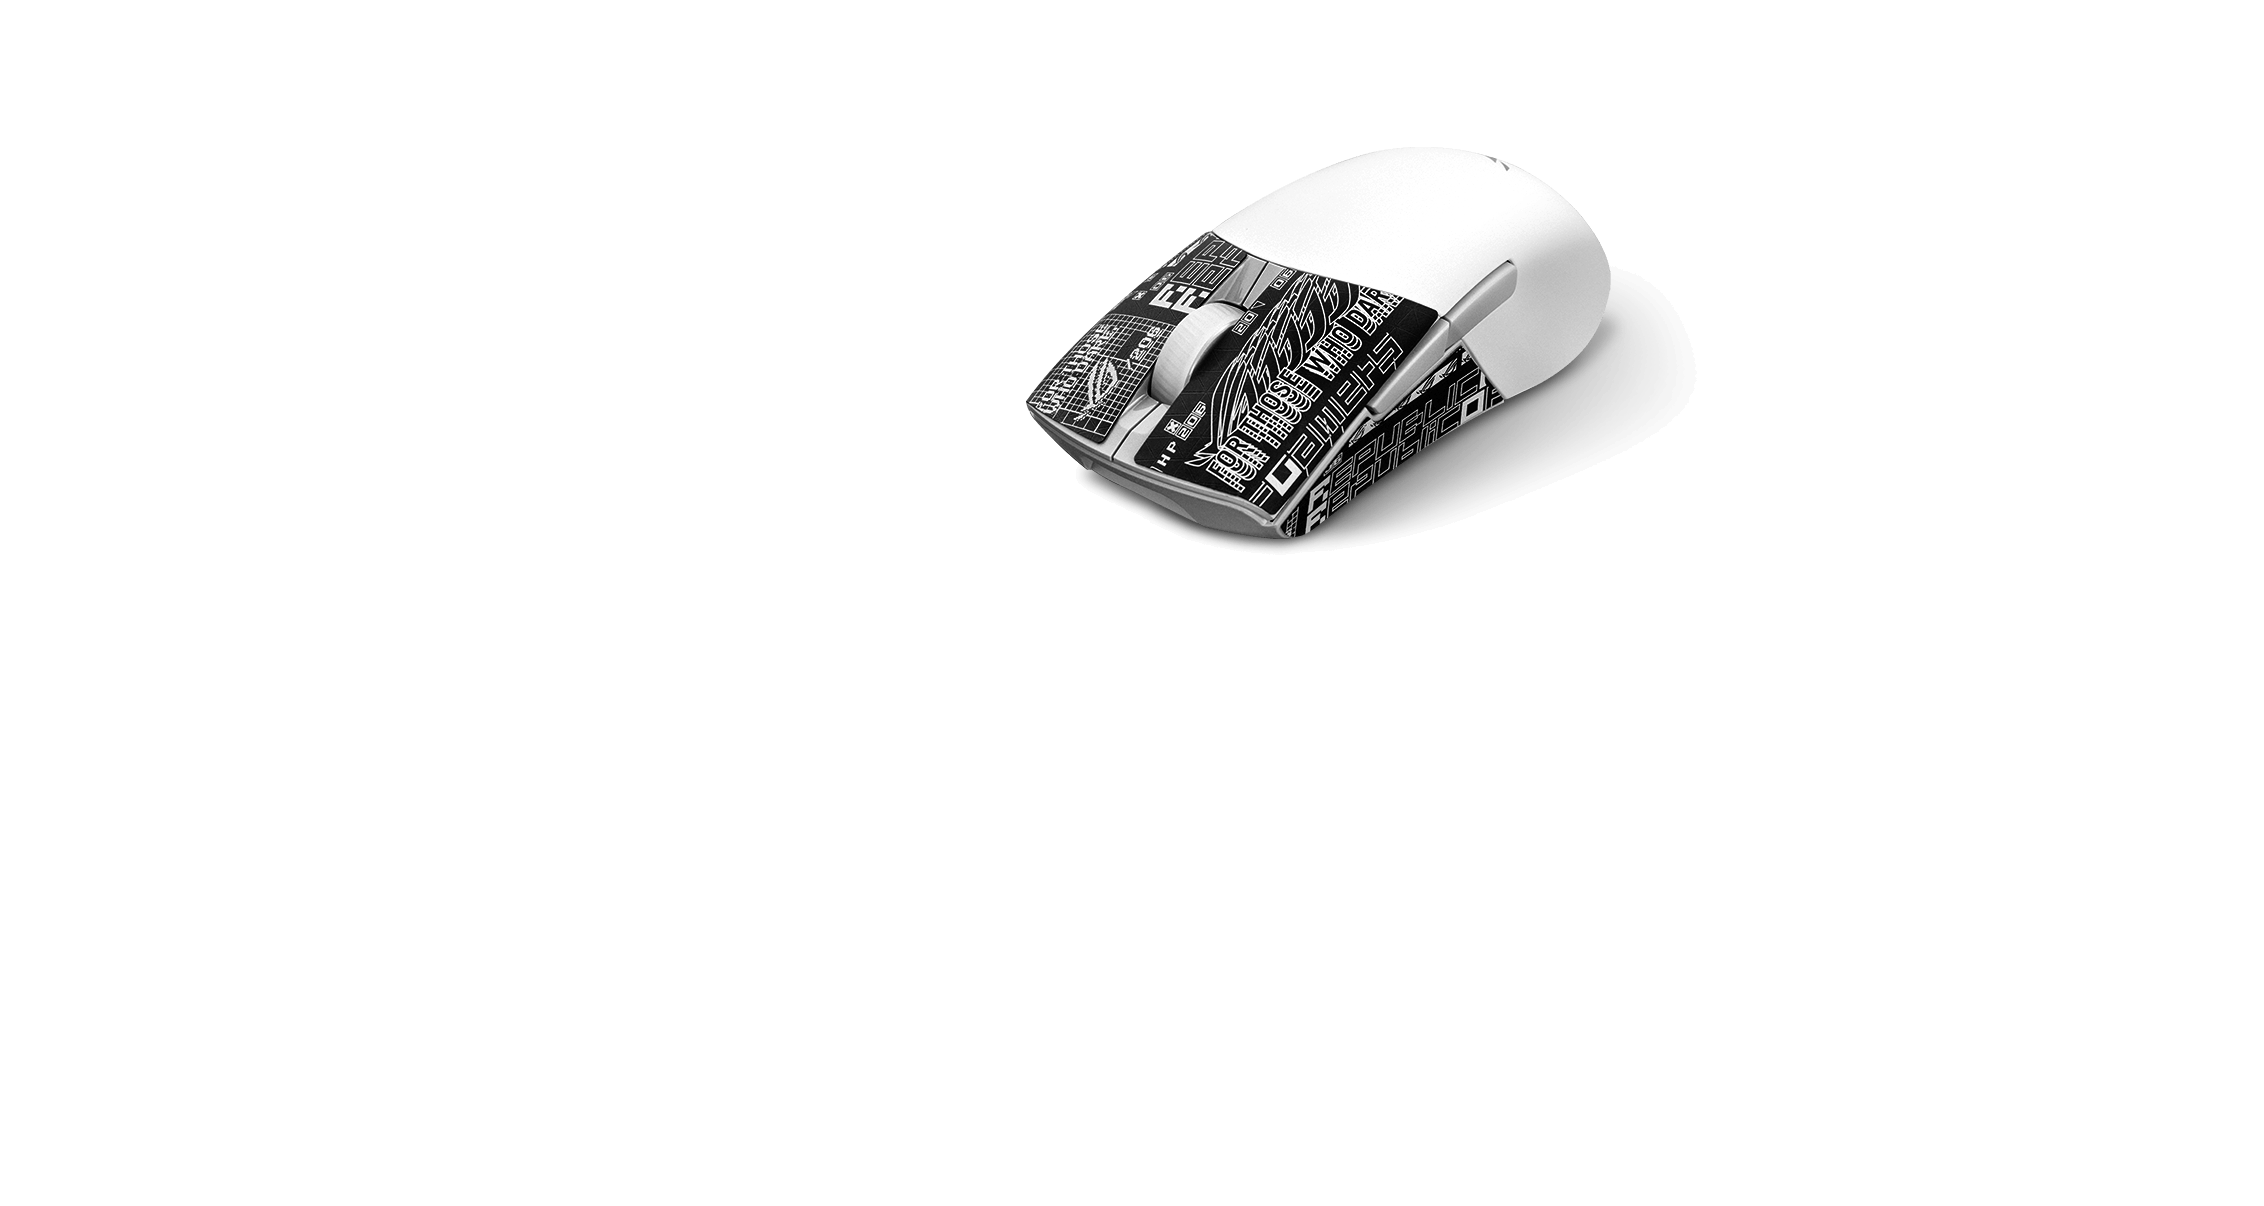 Eine weißer ROG Keris Wireless AimPoint mit ROG-gemustertem Grip Tape